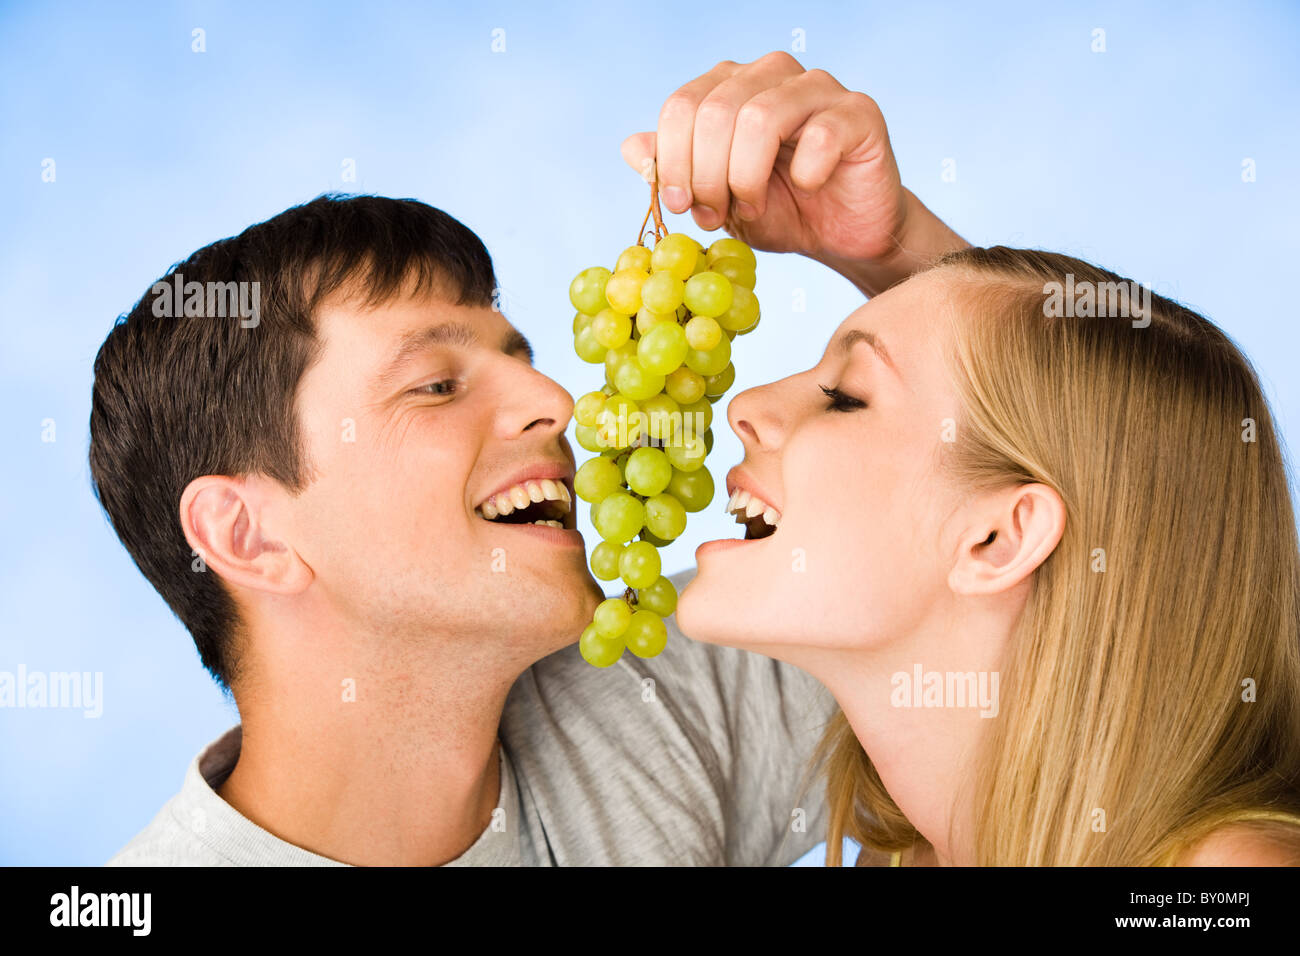 Девушка есть виноград. Девушка ест виноград. Парень с фруктами. Кушать виноград. Парень и девушка едят фрукты.